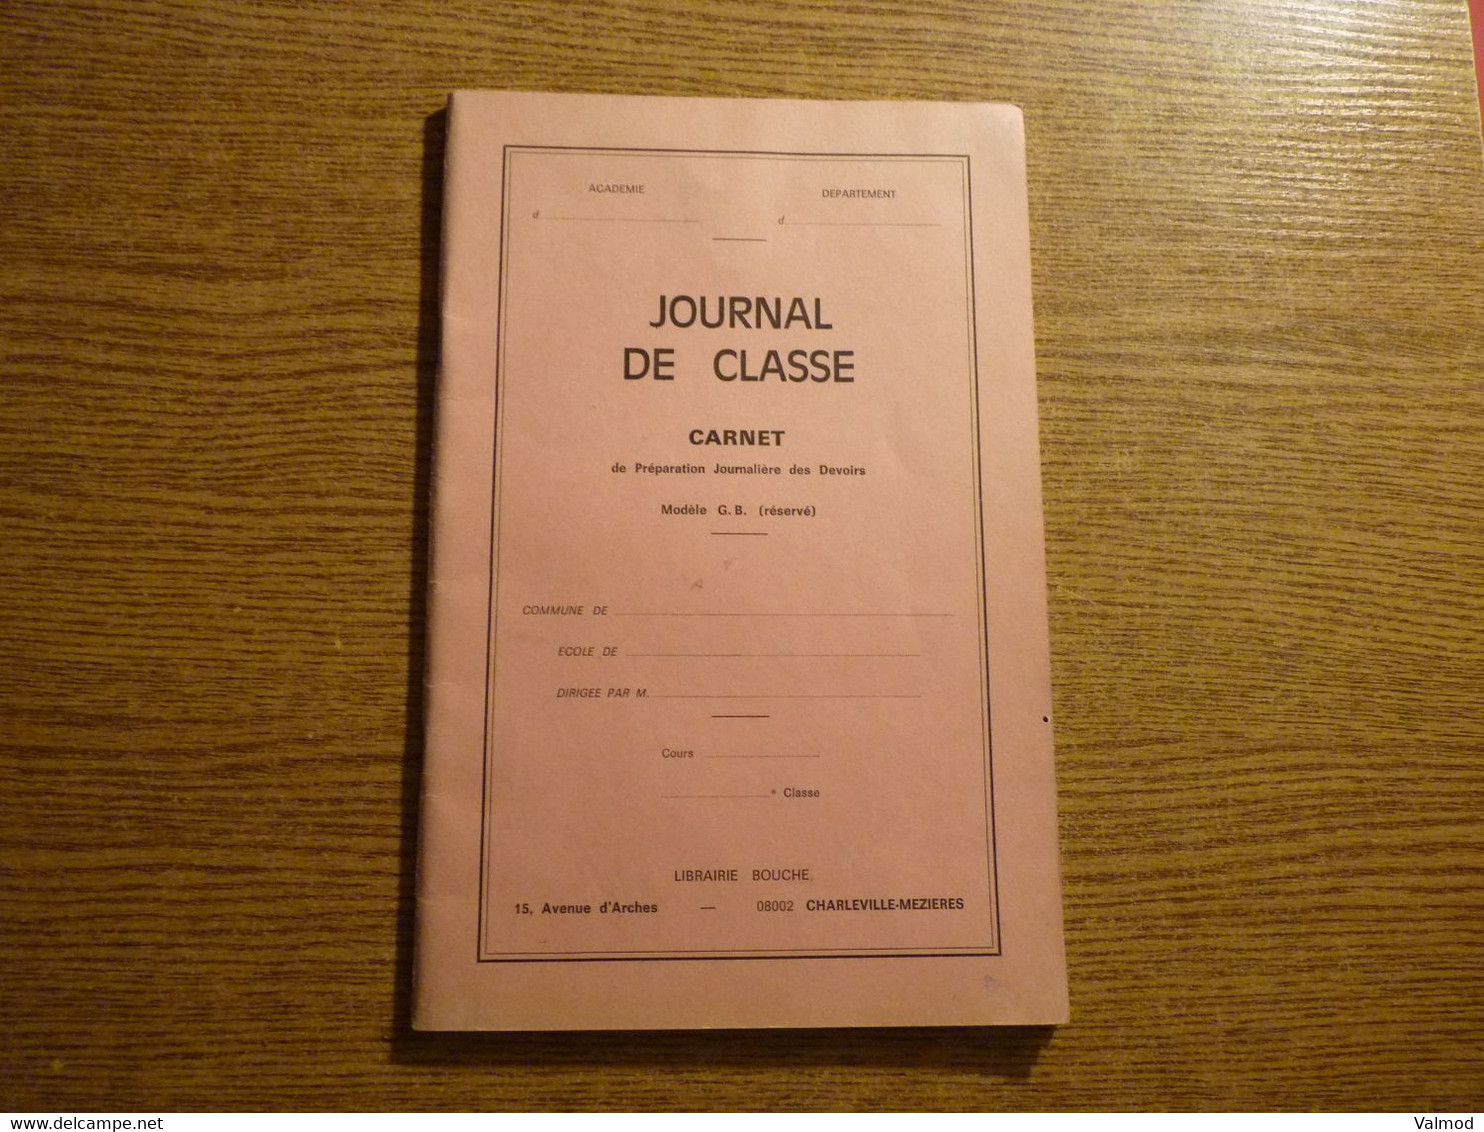 Scolaire - Journal De Classe - Carnet De Préparation Journalière Des Devoirs - Librairie Bouche - Charleville-Mézières. - Material Y Accesorios